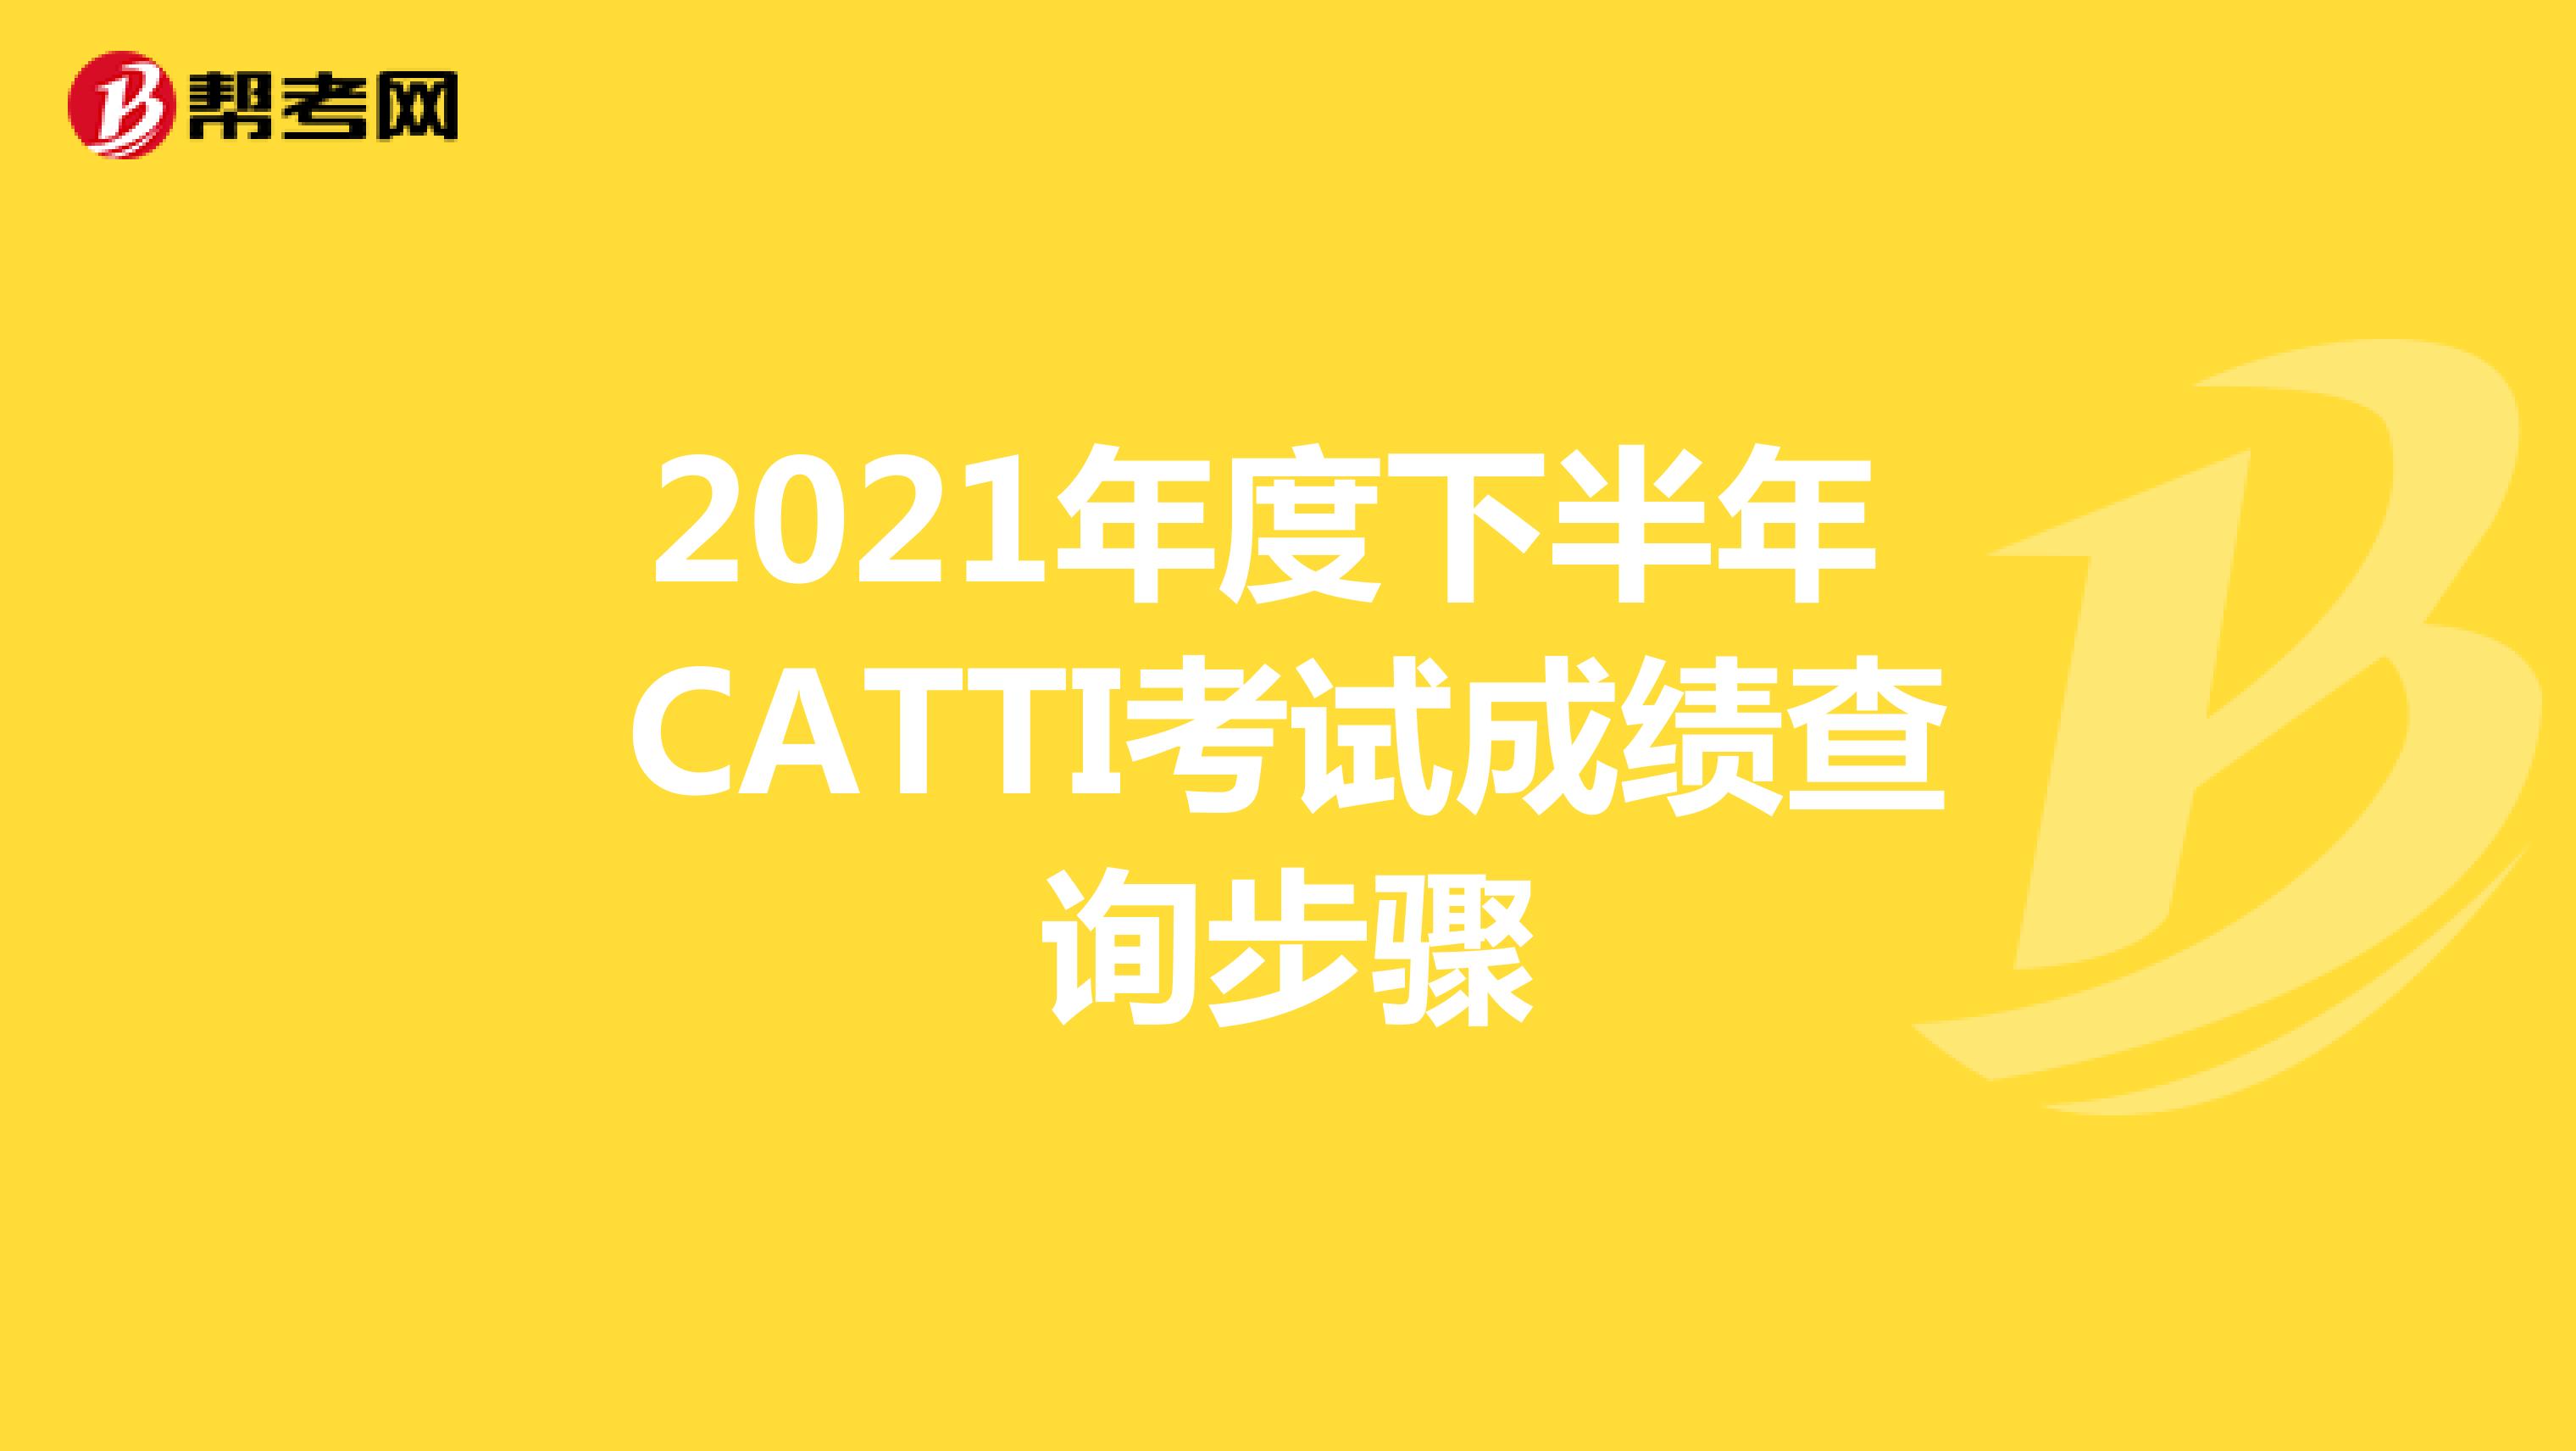 2021年度下半年 CATTI考试成绩查询步骤